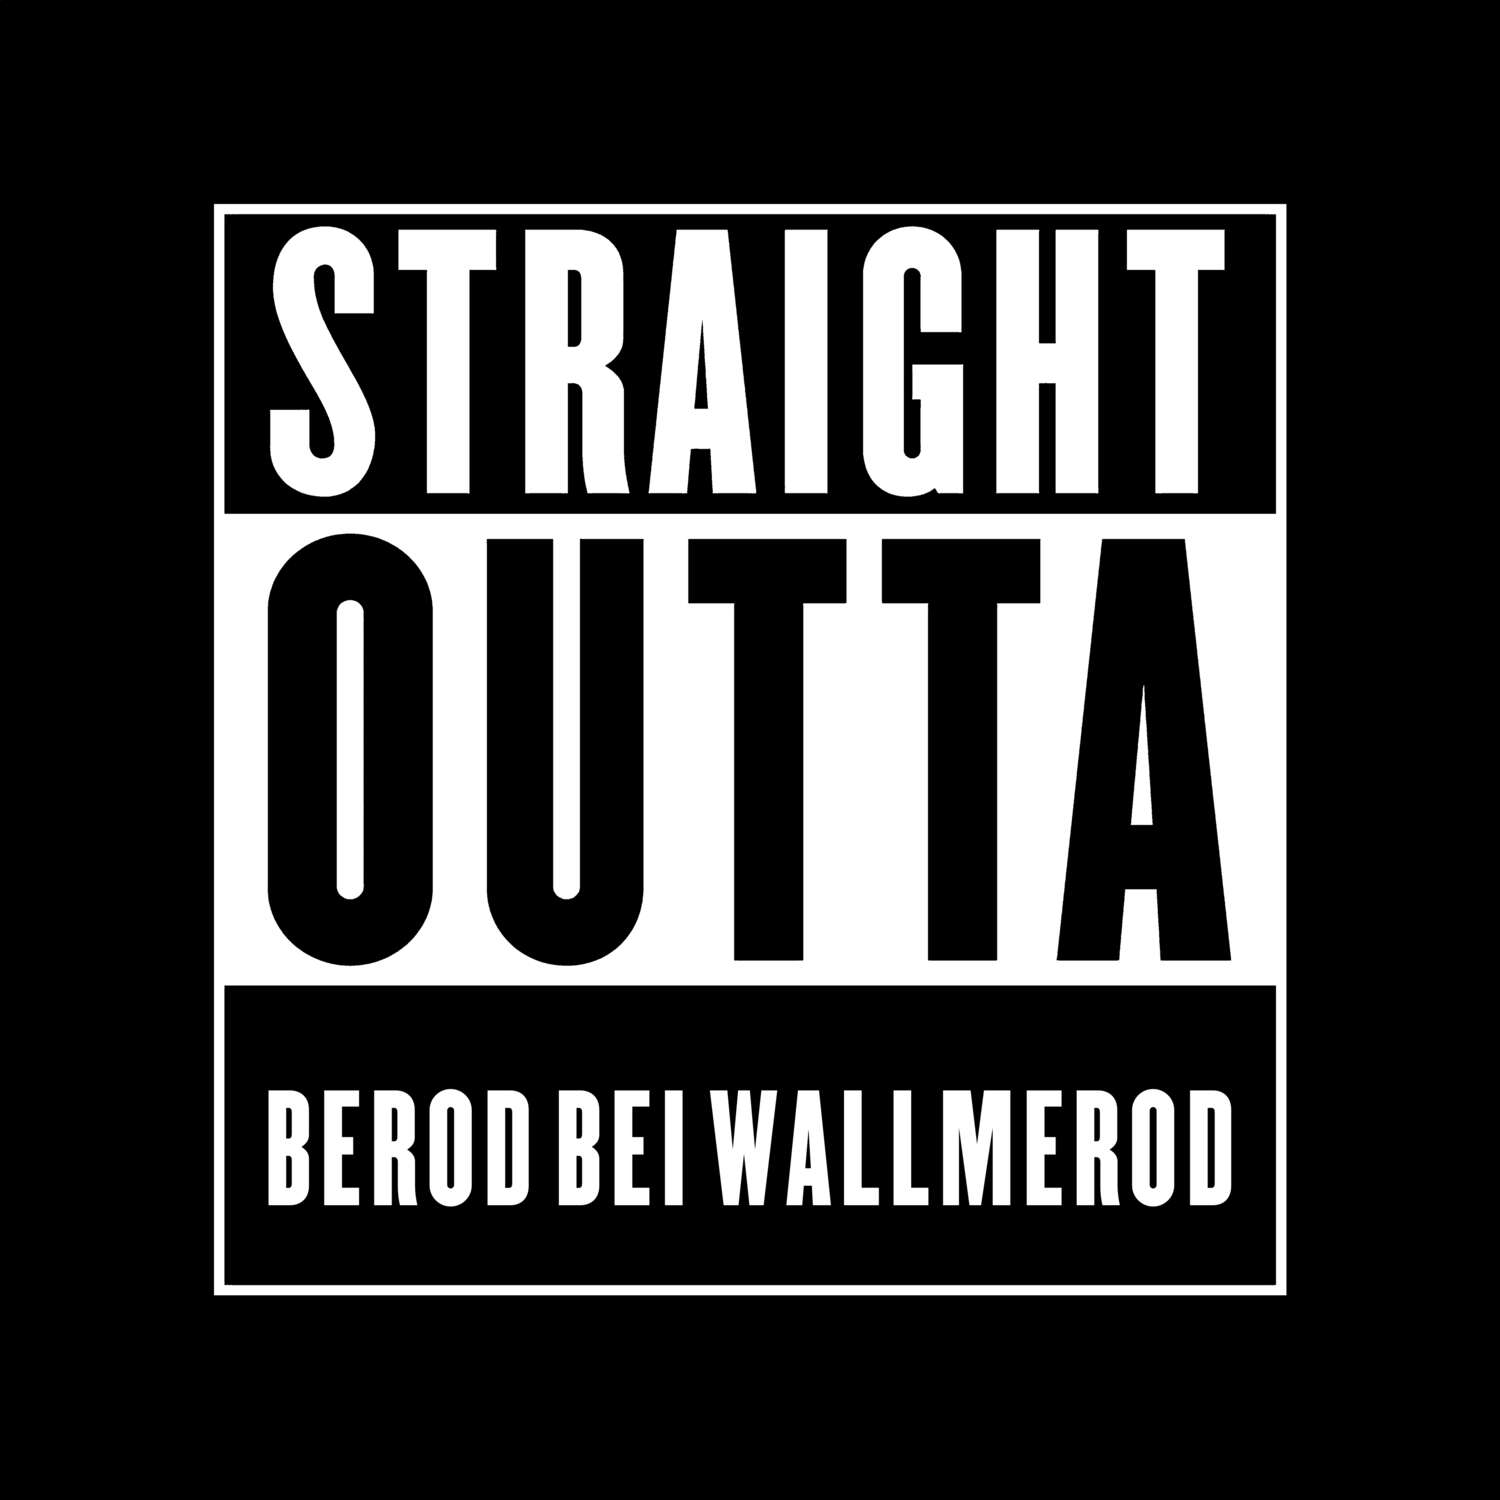 Berod bei Wallmerod T-Shirt »Straight Outta«